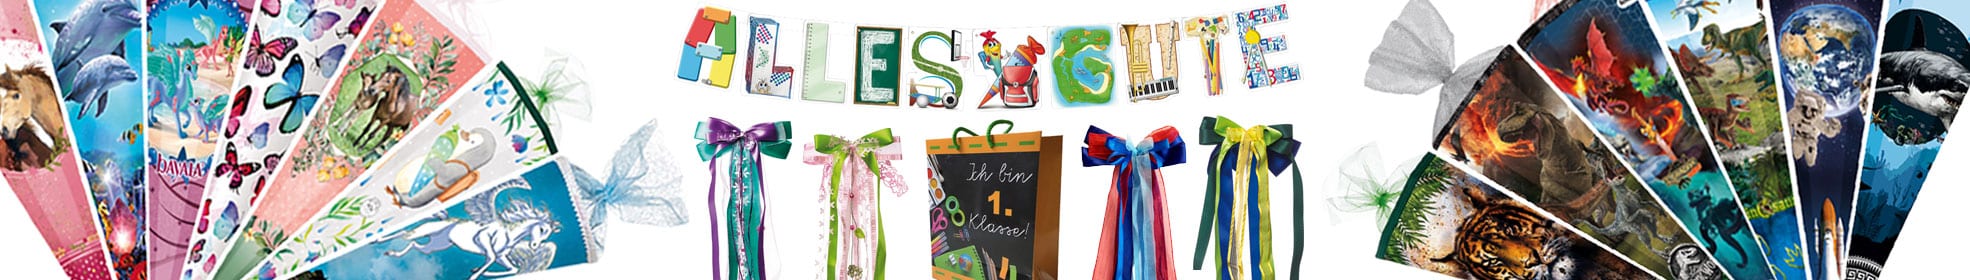 Banner für die Kategorie Geschenke und Nützliches zum Schulanfang